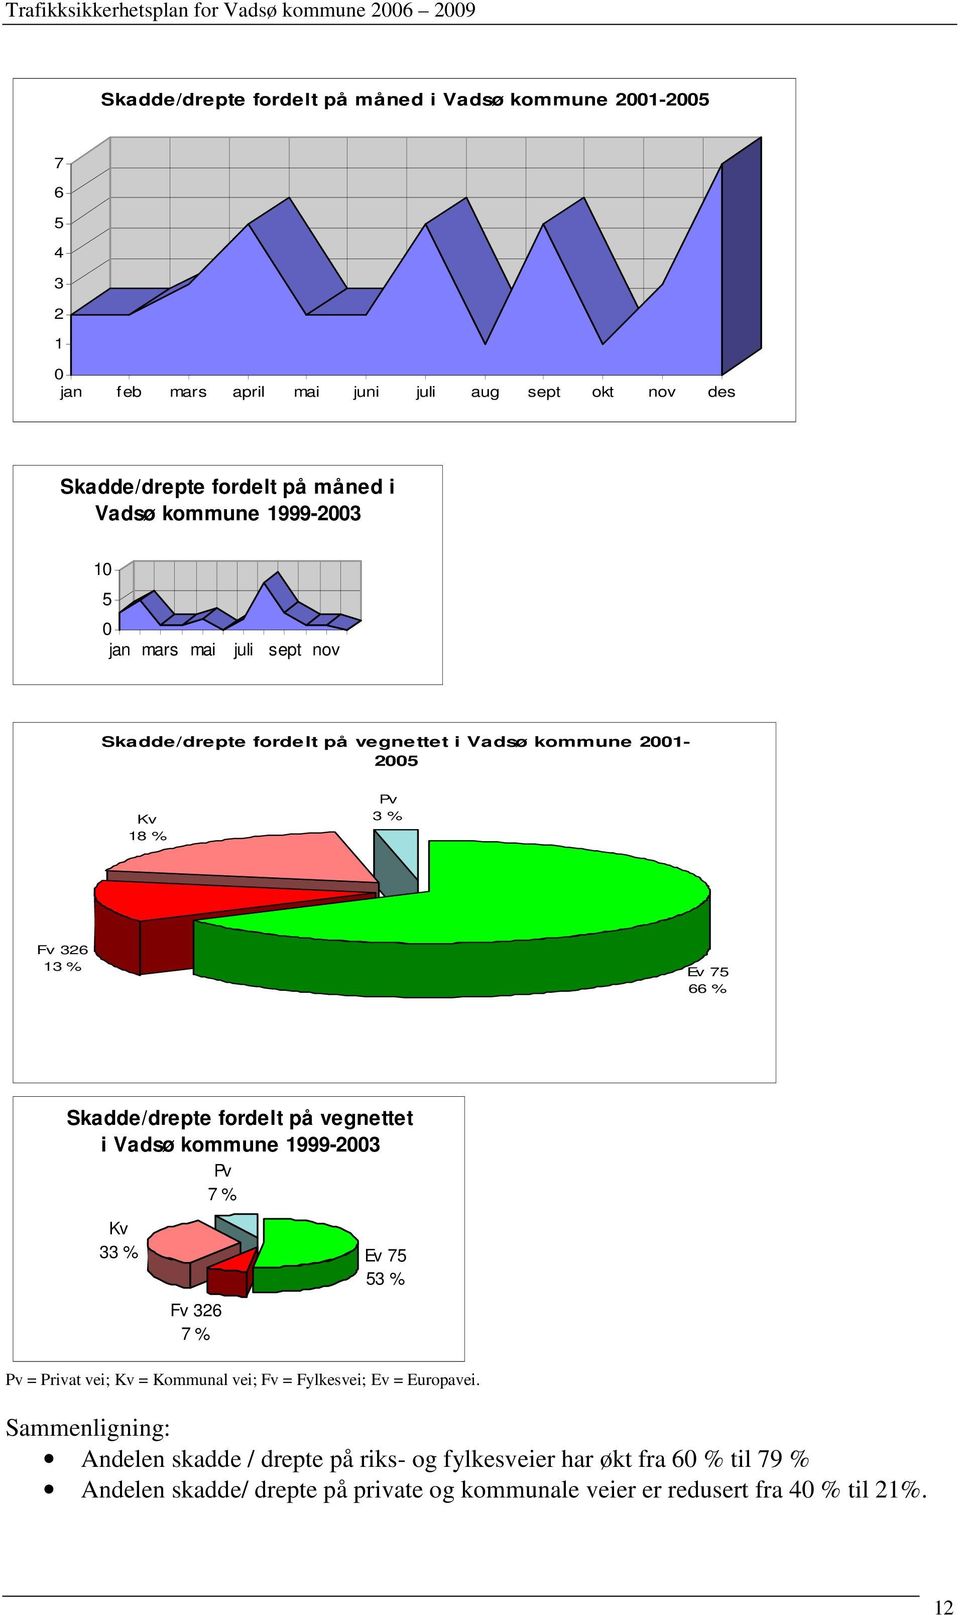 Skadde/drepte fordelt på vegnettet i Vadsø kommune 1999-2003 Pv 7 % Kv 33 % Fv 326 7 % Ev 75 53 % Pv = Privat vei; Kv = Kommunal vei; Fv = Fylkesvei; Ev = Europavei.